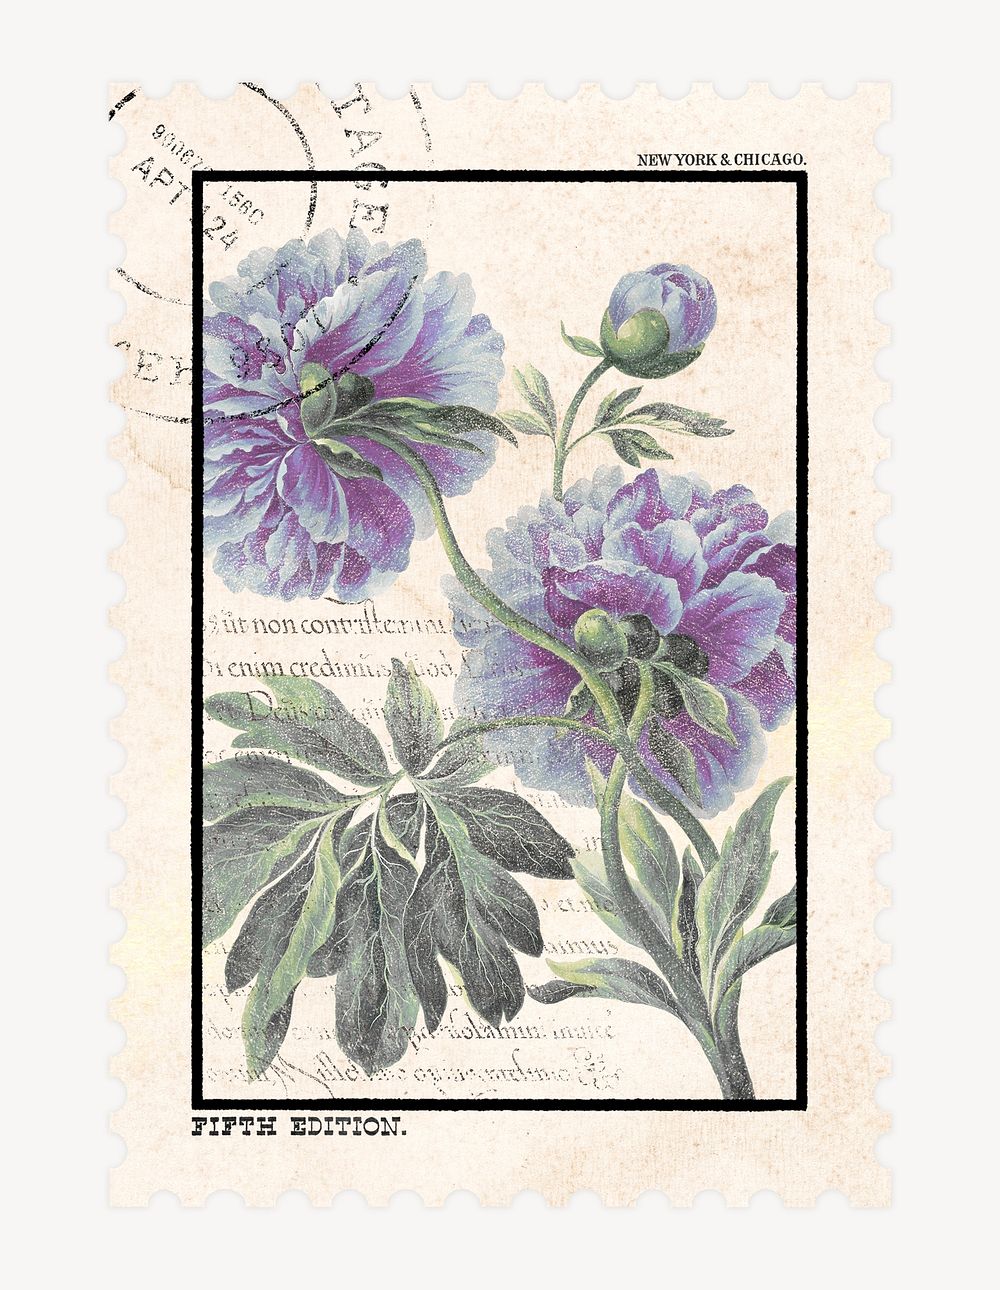 Flower postage stamp illustration, vintage graphic